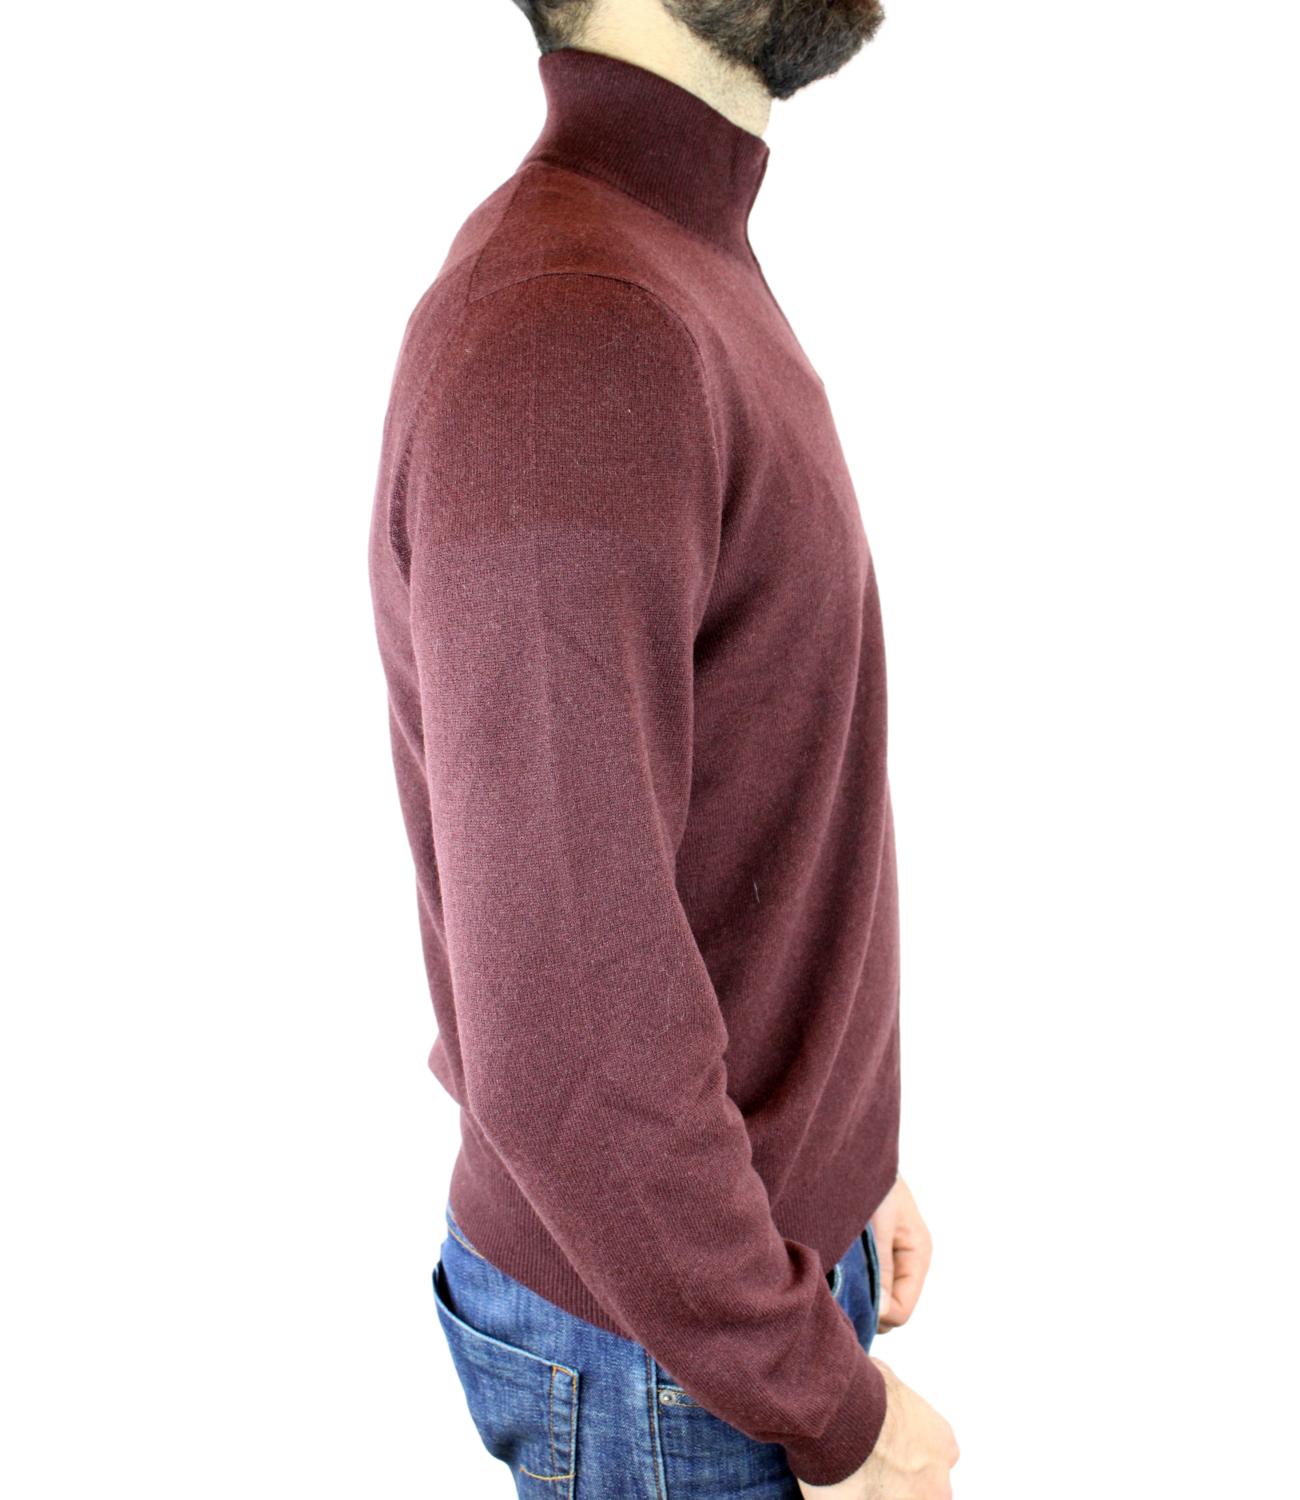 Bordeaux men's turtleneck sweater with zip